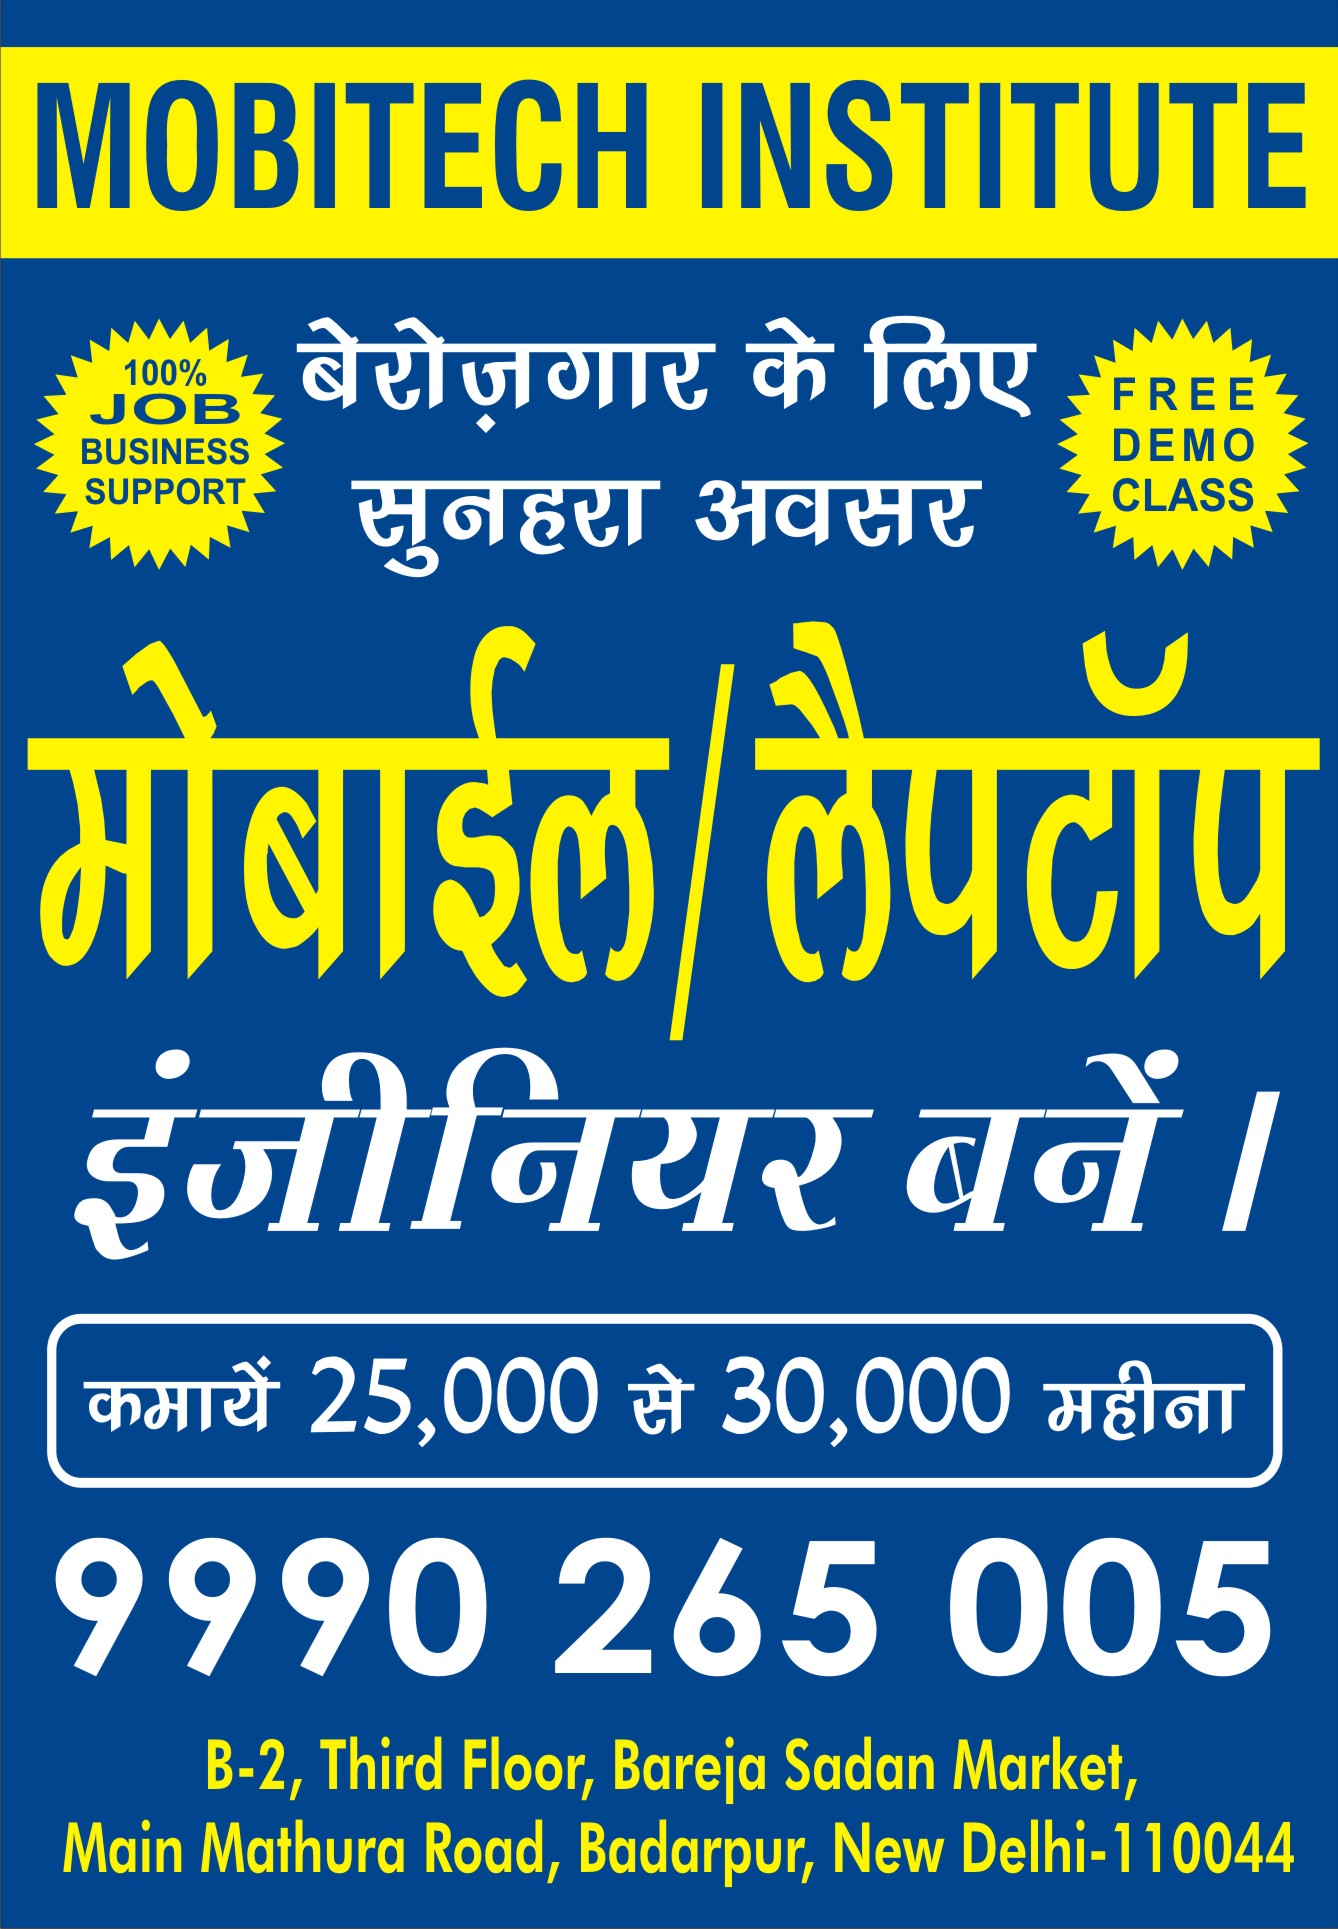 Mobitech Institute, best mobile repairing course in Delhi, best mobile repairing institute in Delhi, best mobile repairing coaching center in Delhi, best mobile repairing classes in Delhi 